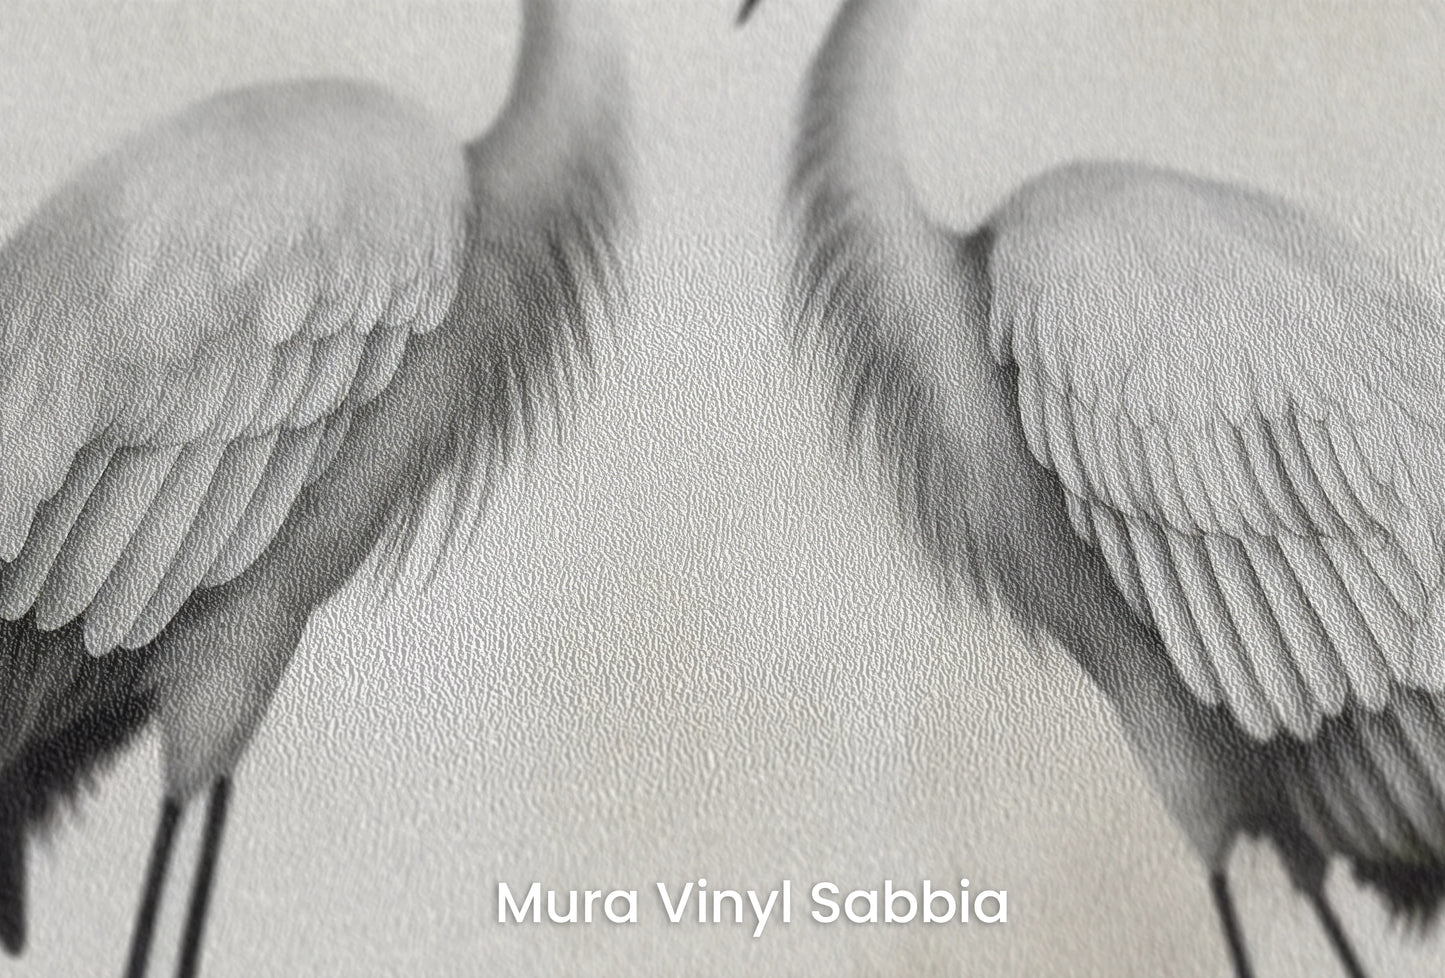 Zbliżenie na artystyczną fototapetę o nazwie Moonlight Serenade na podłożu Mura Vinyl Sabbia struktura grubego ziarna piasku.